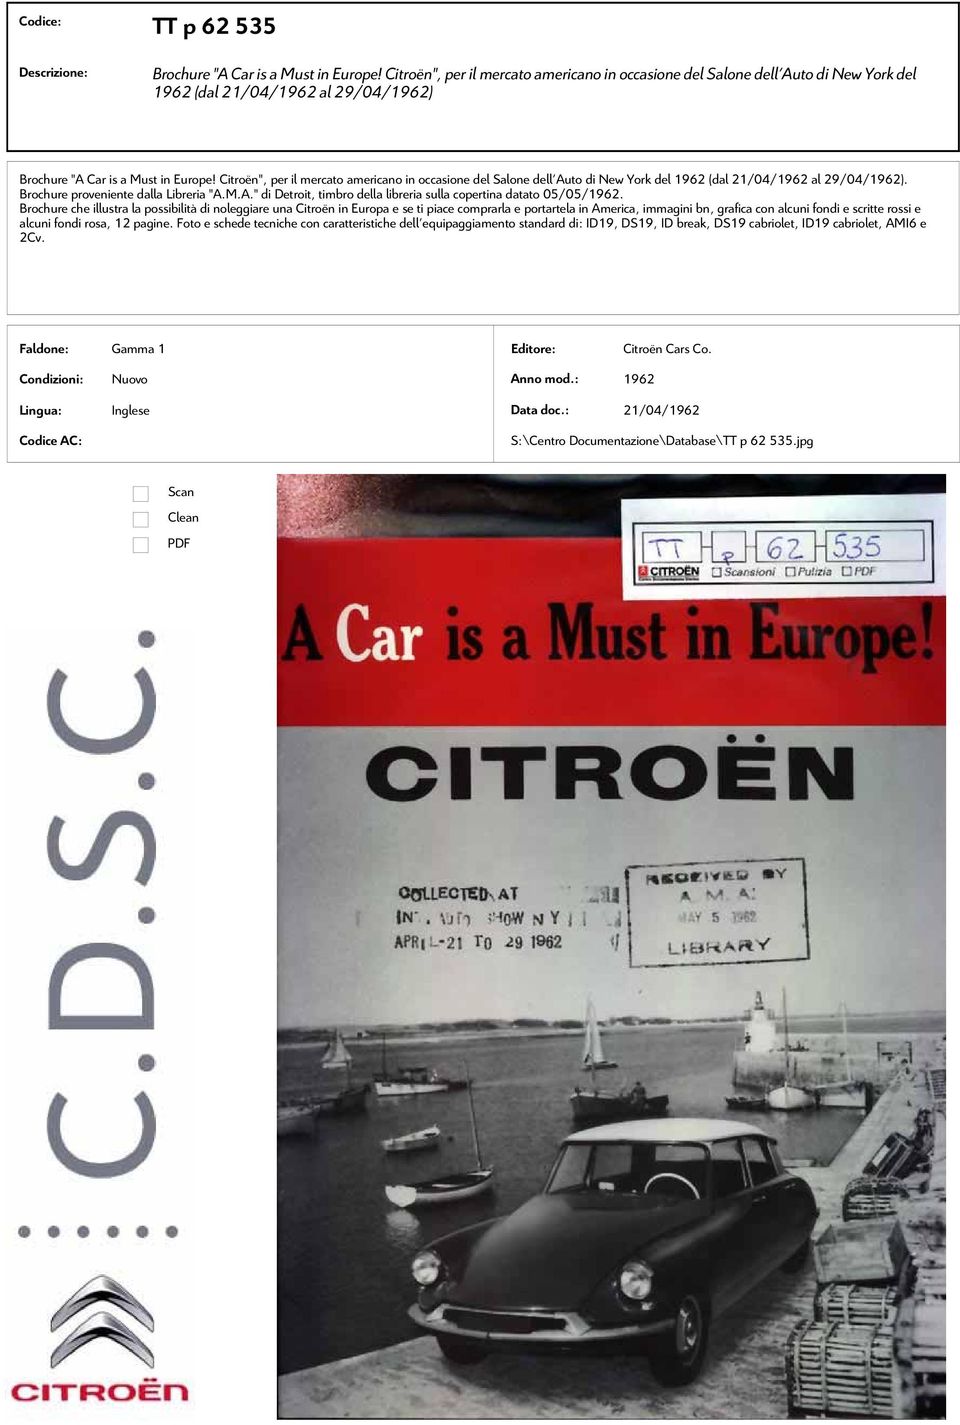 Citroën", per il mercato americano in occasione del Salone dell'auto di New York del 1962 (dal 21/04/1962 al 29/04/1962). Brochure proveniente dalla Libreria "A.